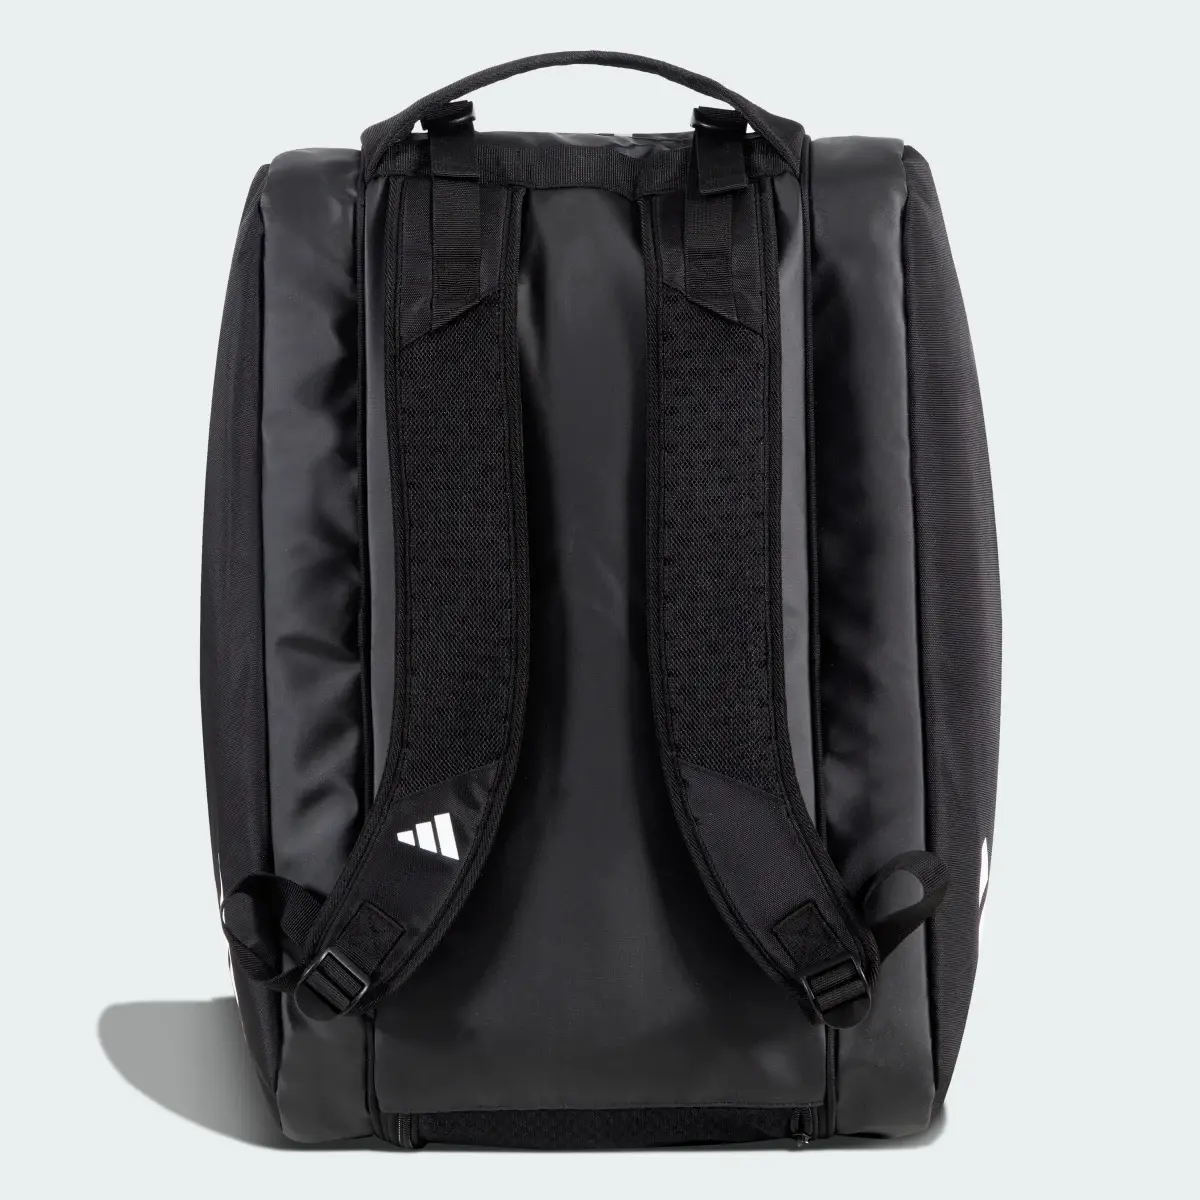 Adidas Racket Bag Multi-Game 3.3 Black. 2